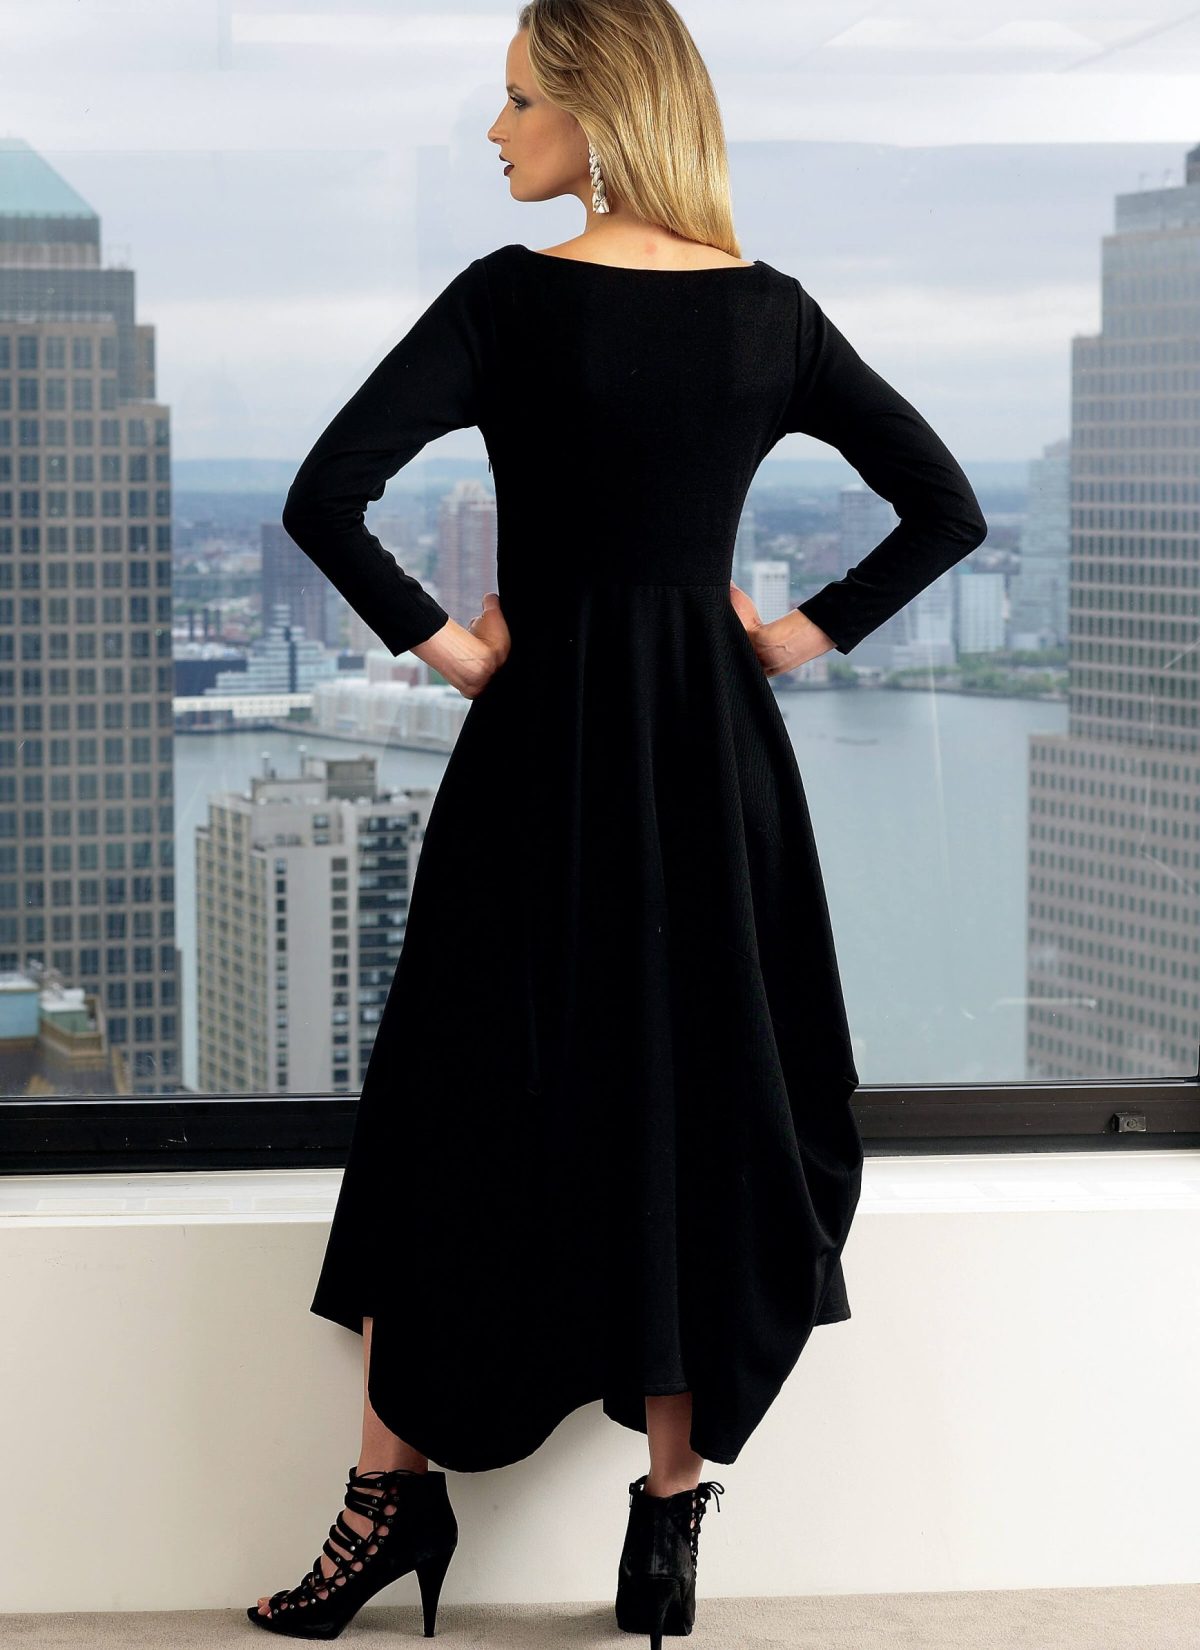 Vogue Patterns V1312 Misses' Dress